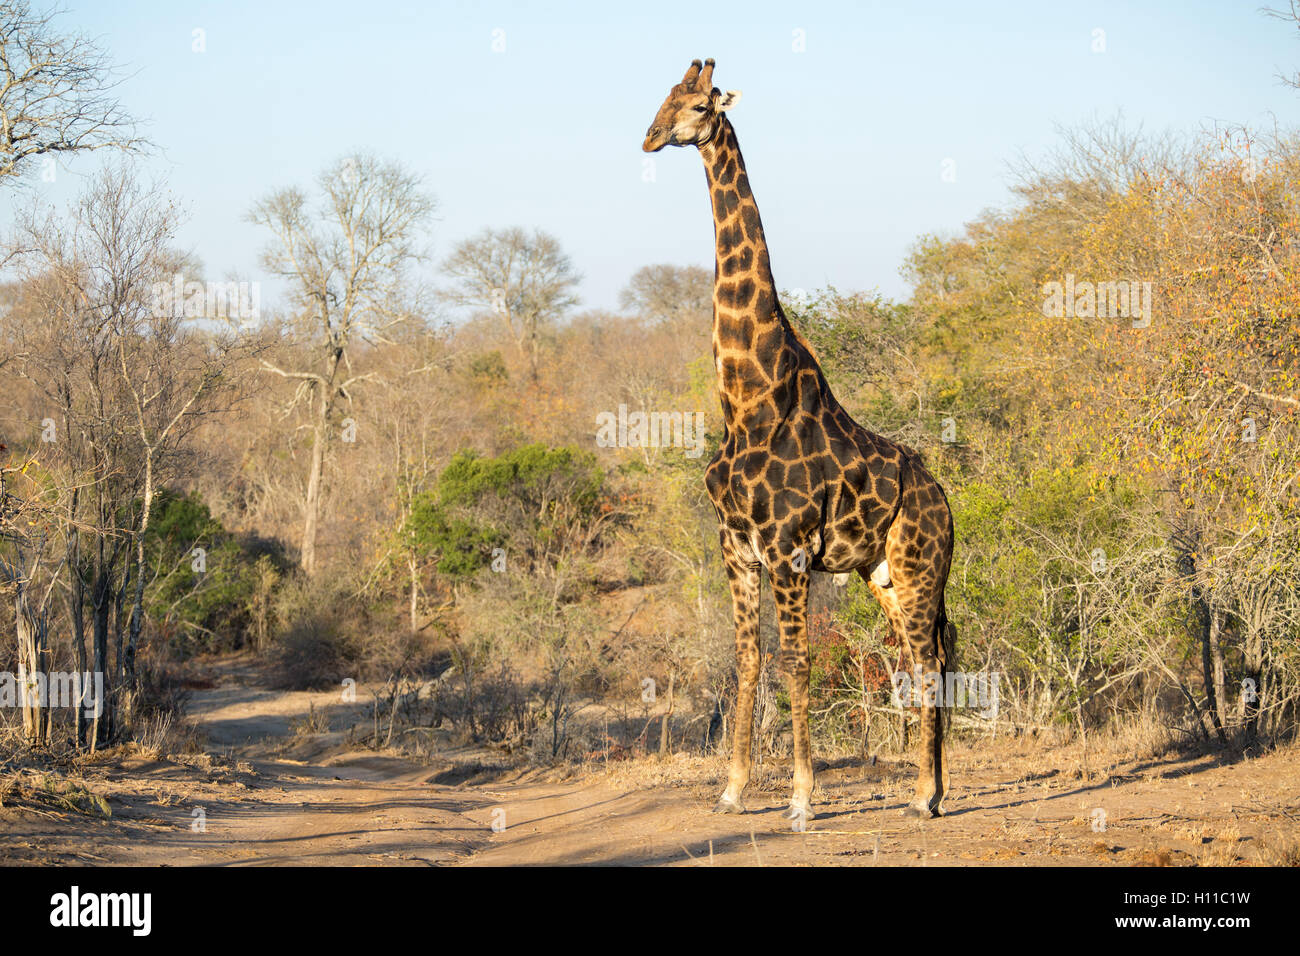 A male southern giraffe (Giraffa giraffa) in a Lowveld bushveld setting Stock Photo